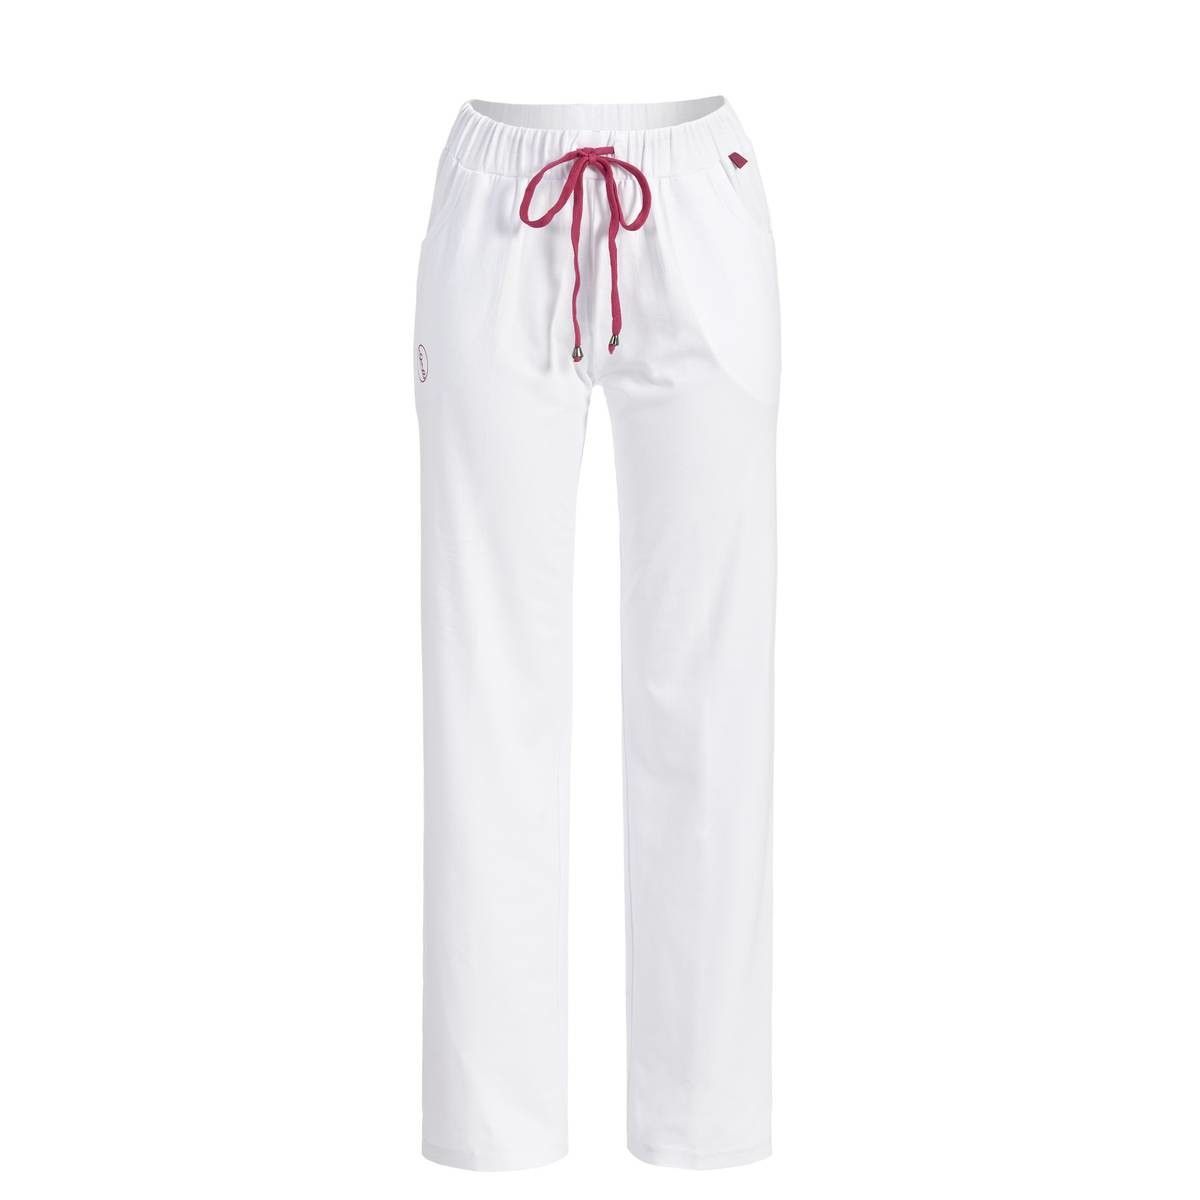 Ringella pyjamabroek zonder boorden wit | Online de mooiste pyjama's, nachthemden, ondermode en